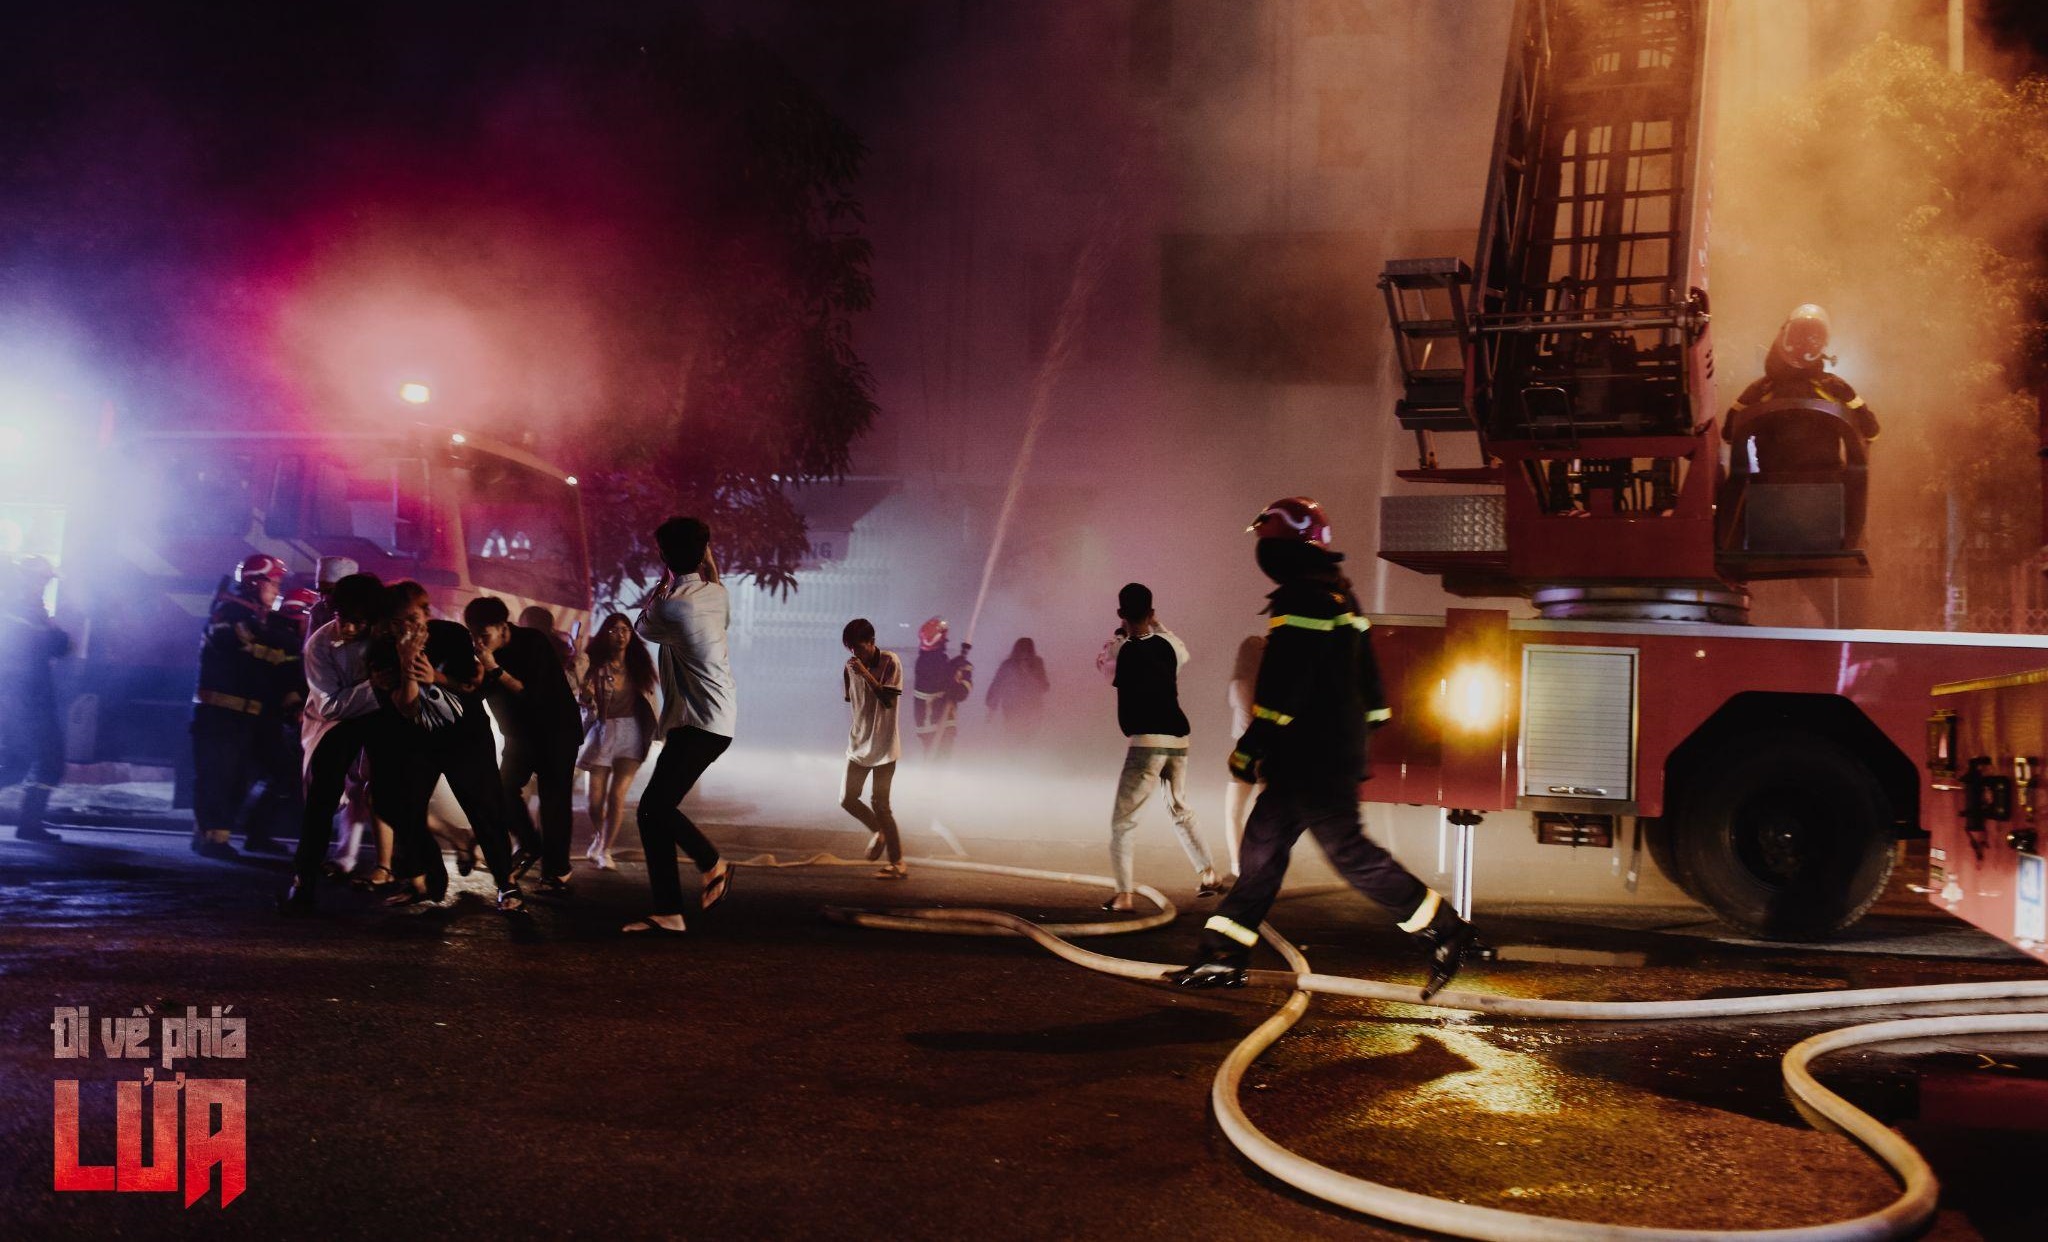 Các diễn viên quần chúng tham gia một cảnh quay trong “Đi về phía lửa” – phim có phần lớn bối cảnh tại Đà Nẵng. Ảnh: ĐPCC